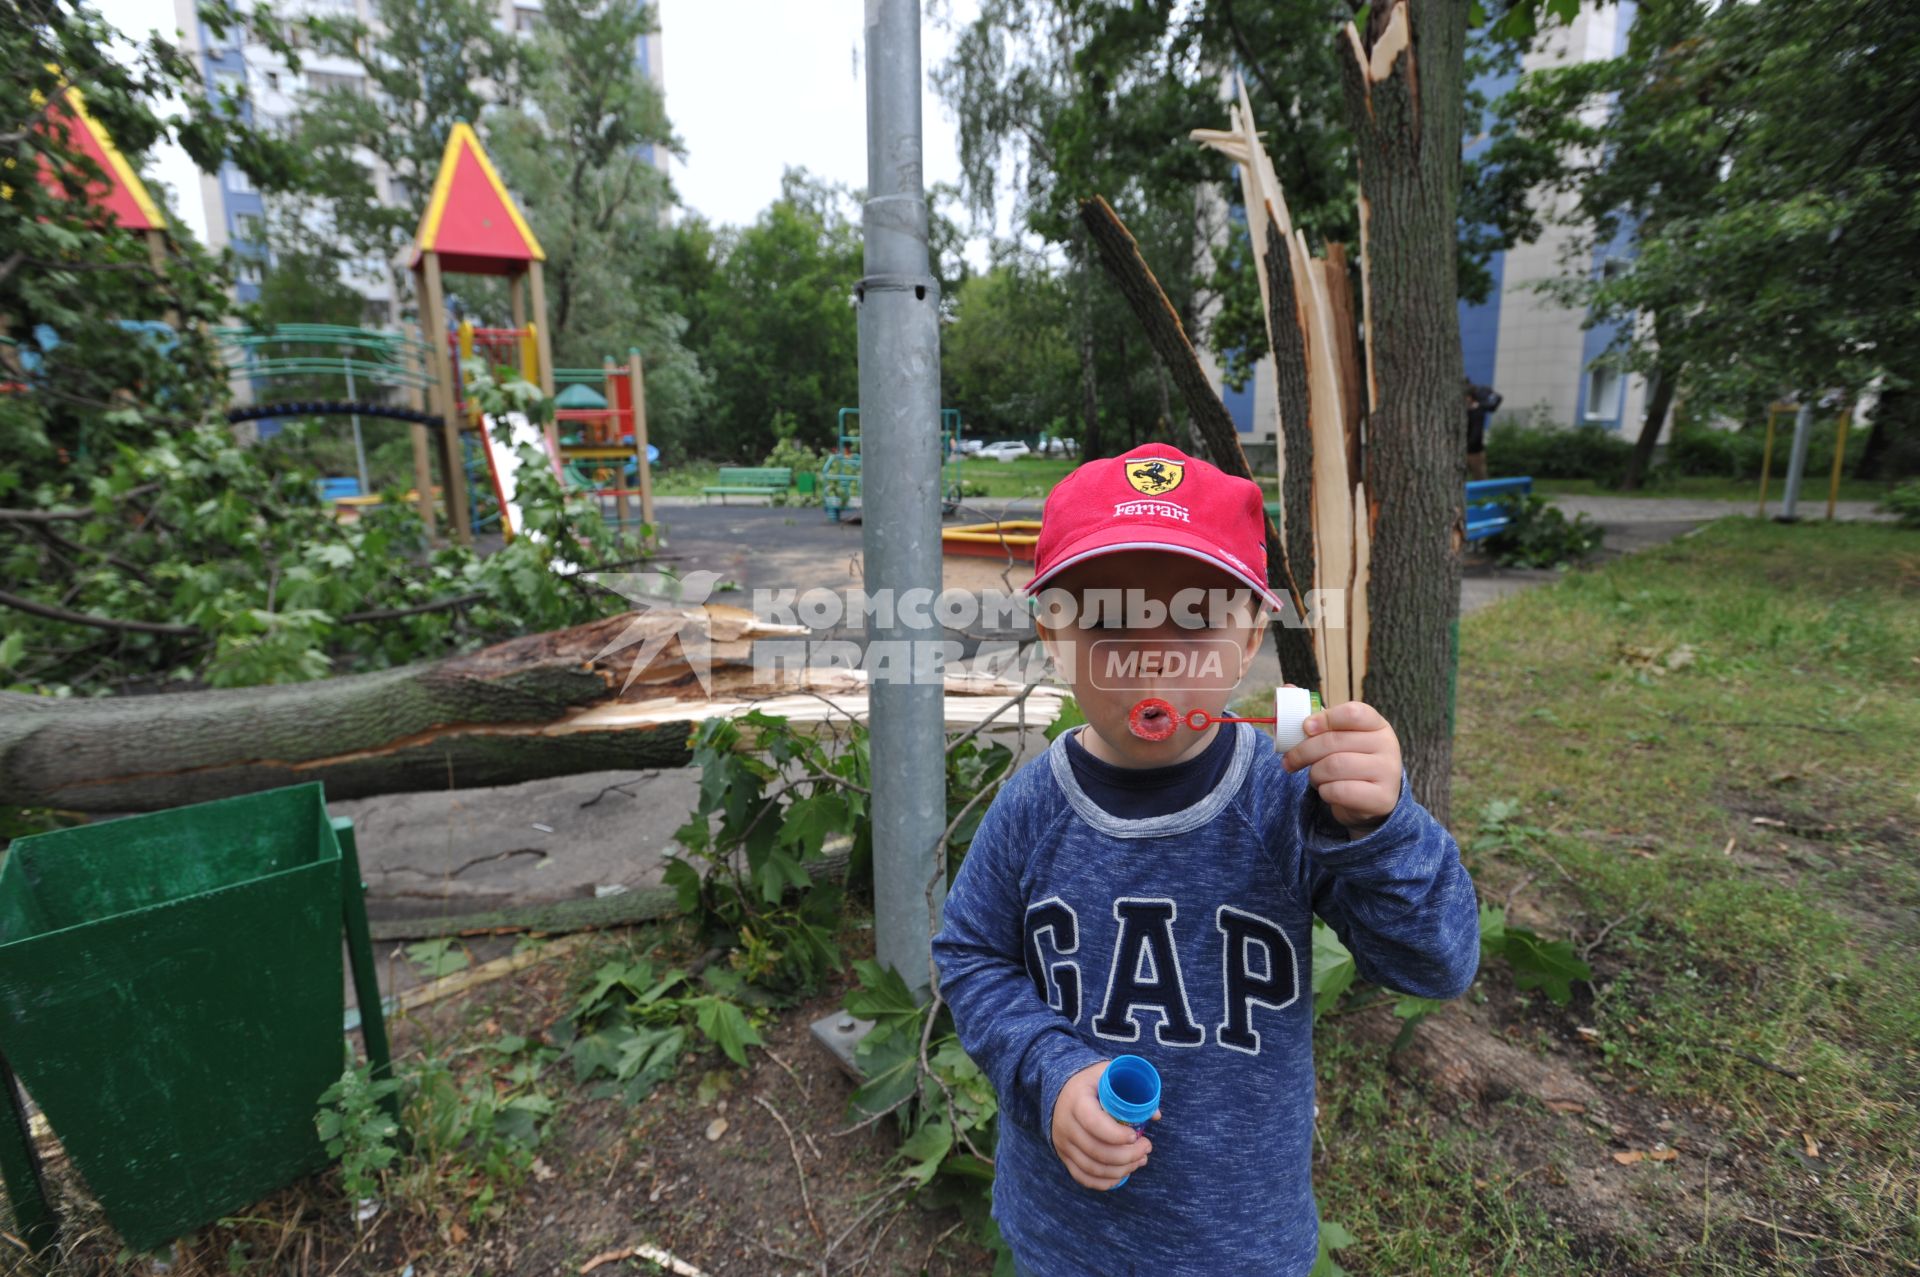 Москва.  Сломанные ураганом деревья на детской площадке.